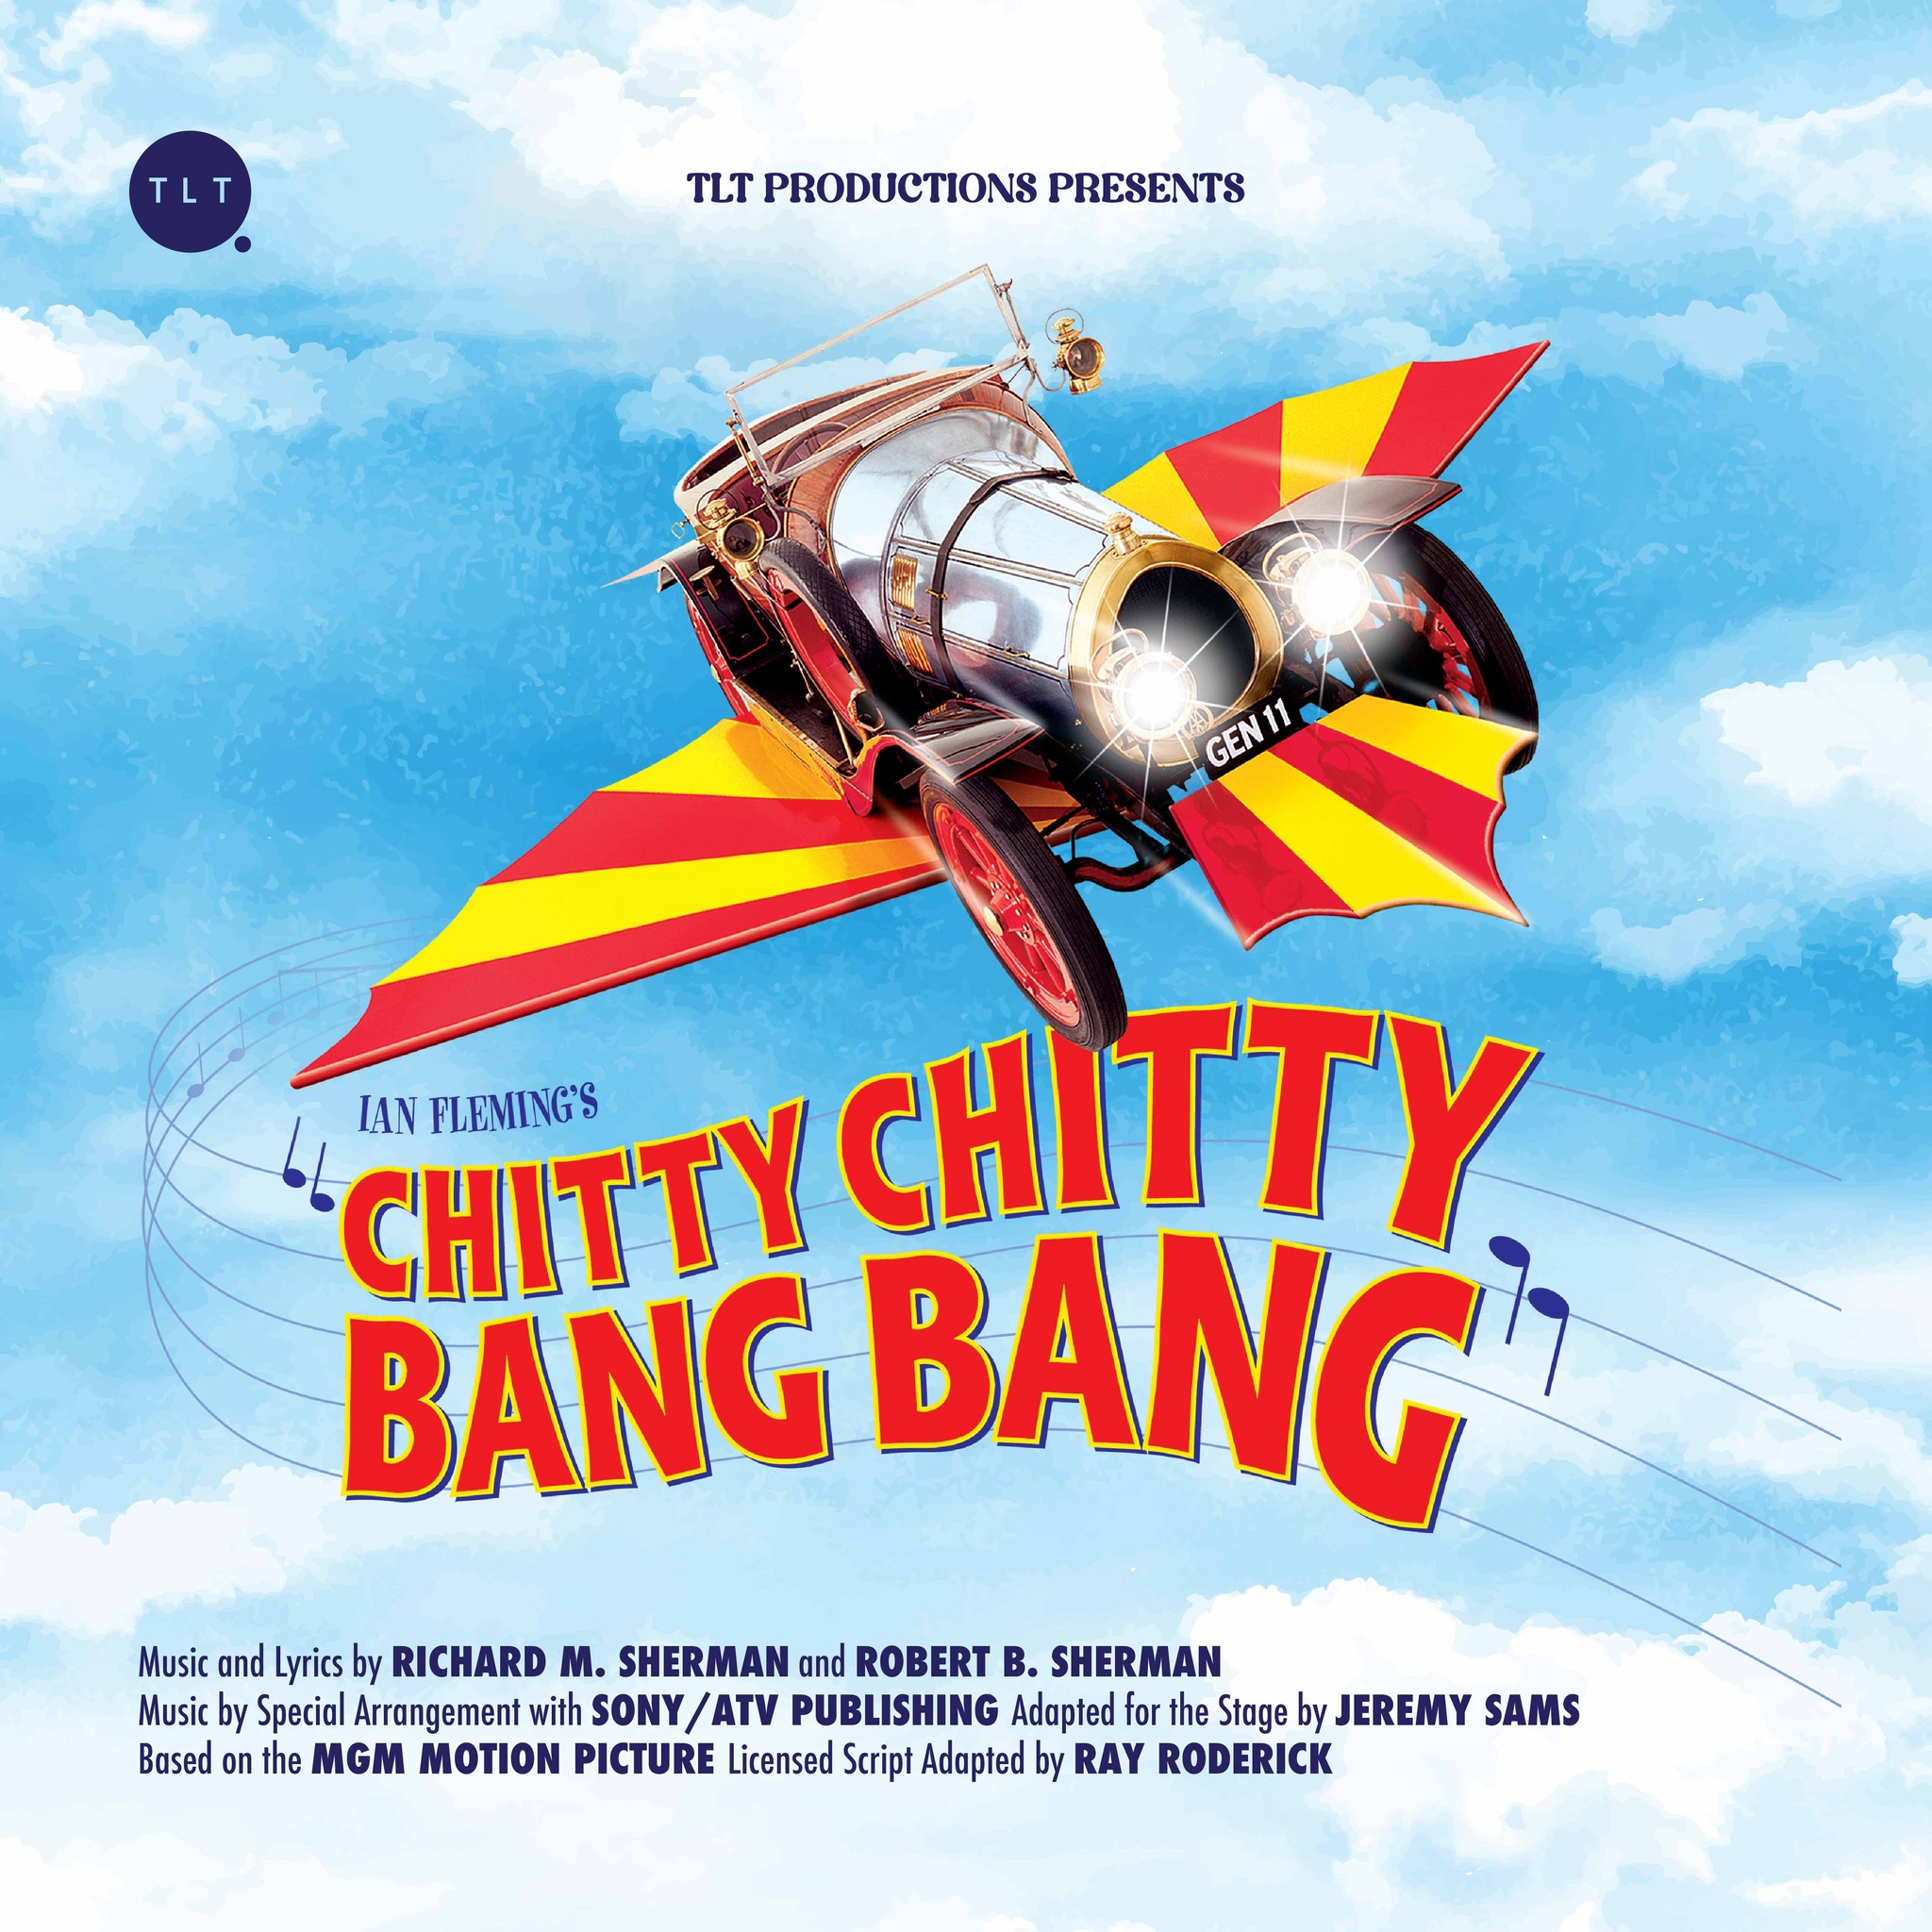 Poster for CHITTY CHITTY BANG BANG